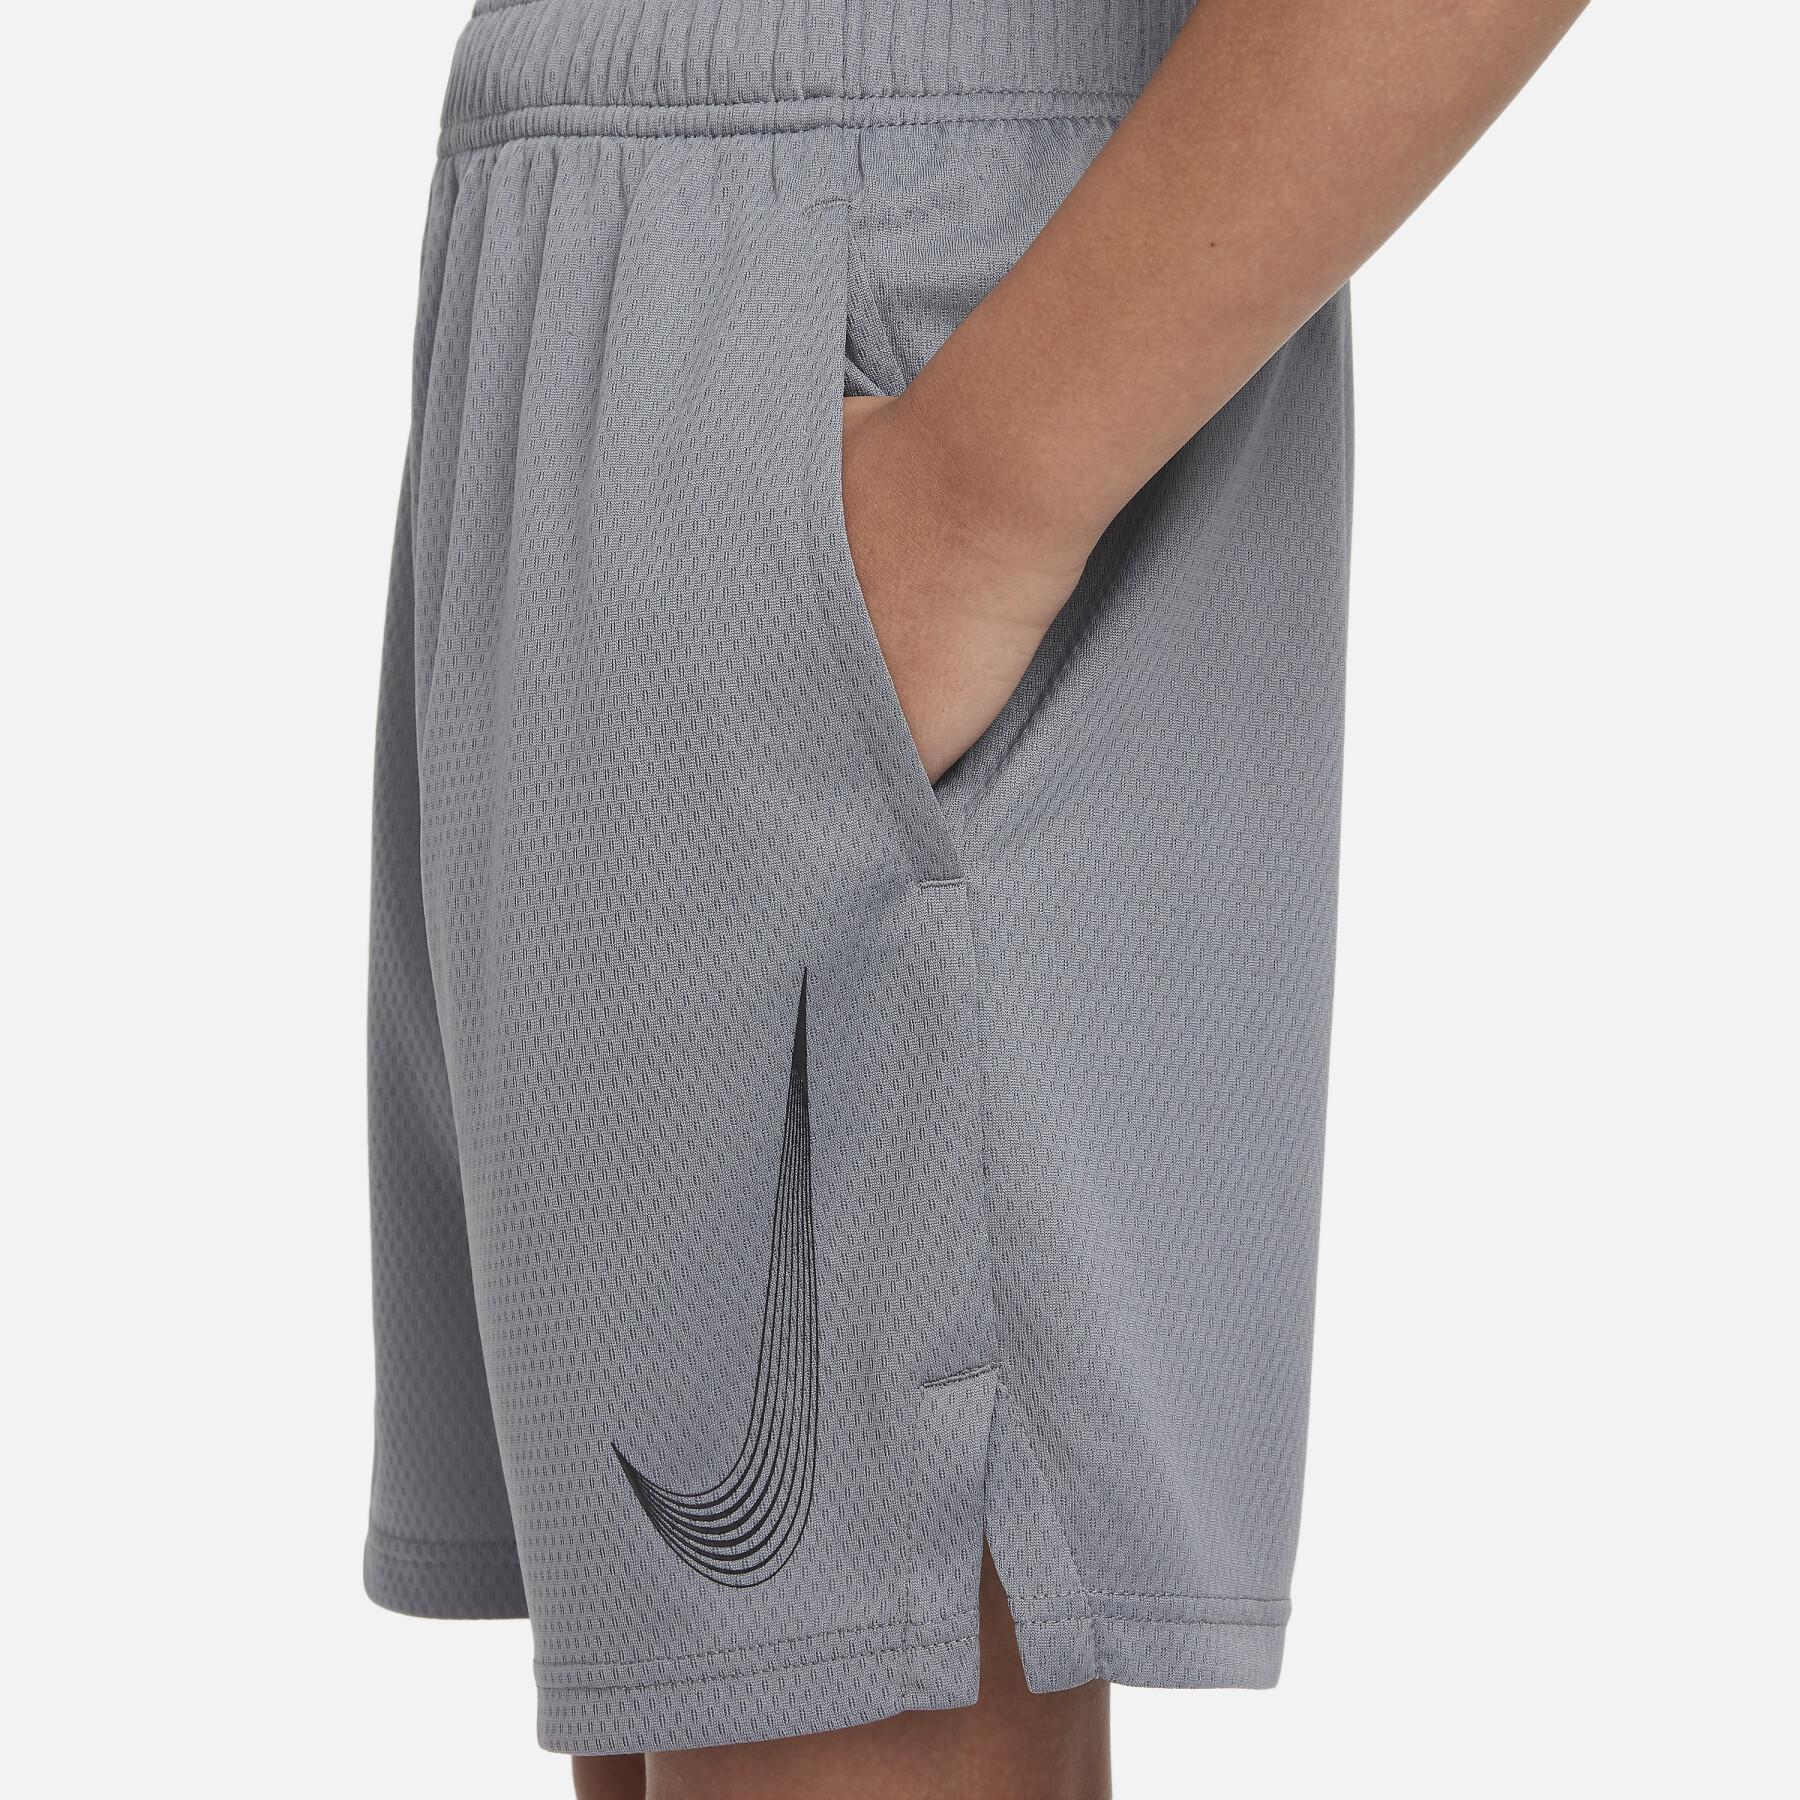 Pantalones cortos para niños Nike HBR